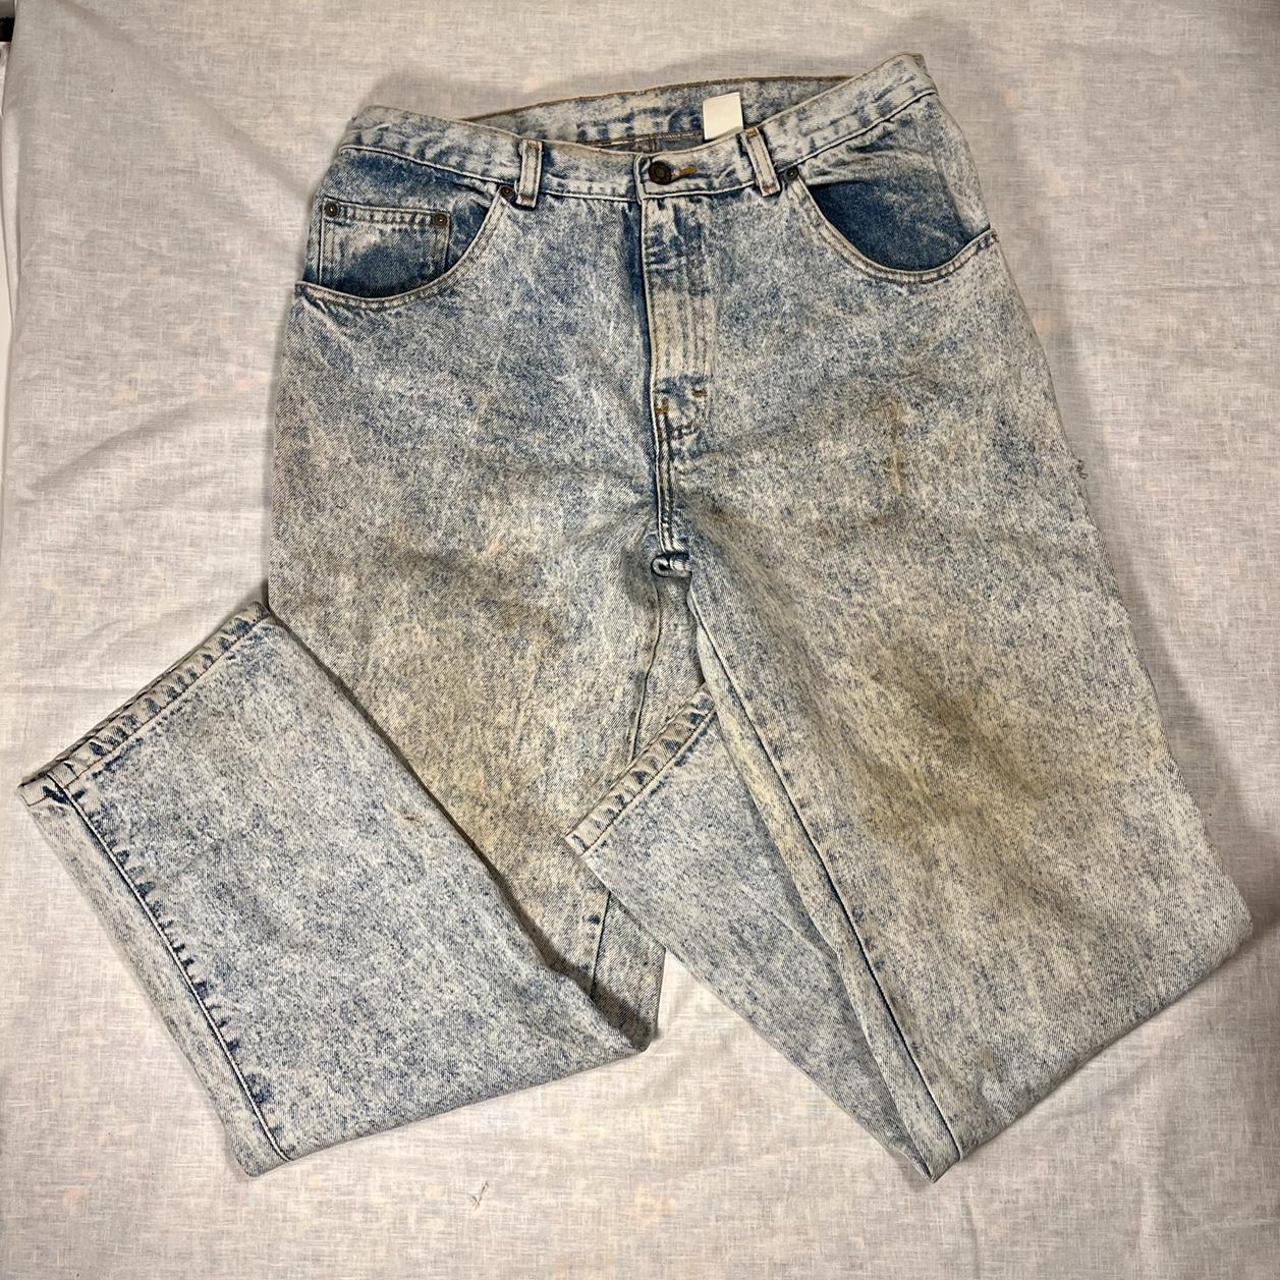 Vintage 90s Sasson acid wash distressed jeans size... - Depop